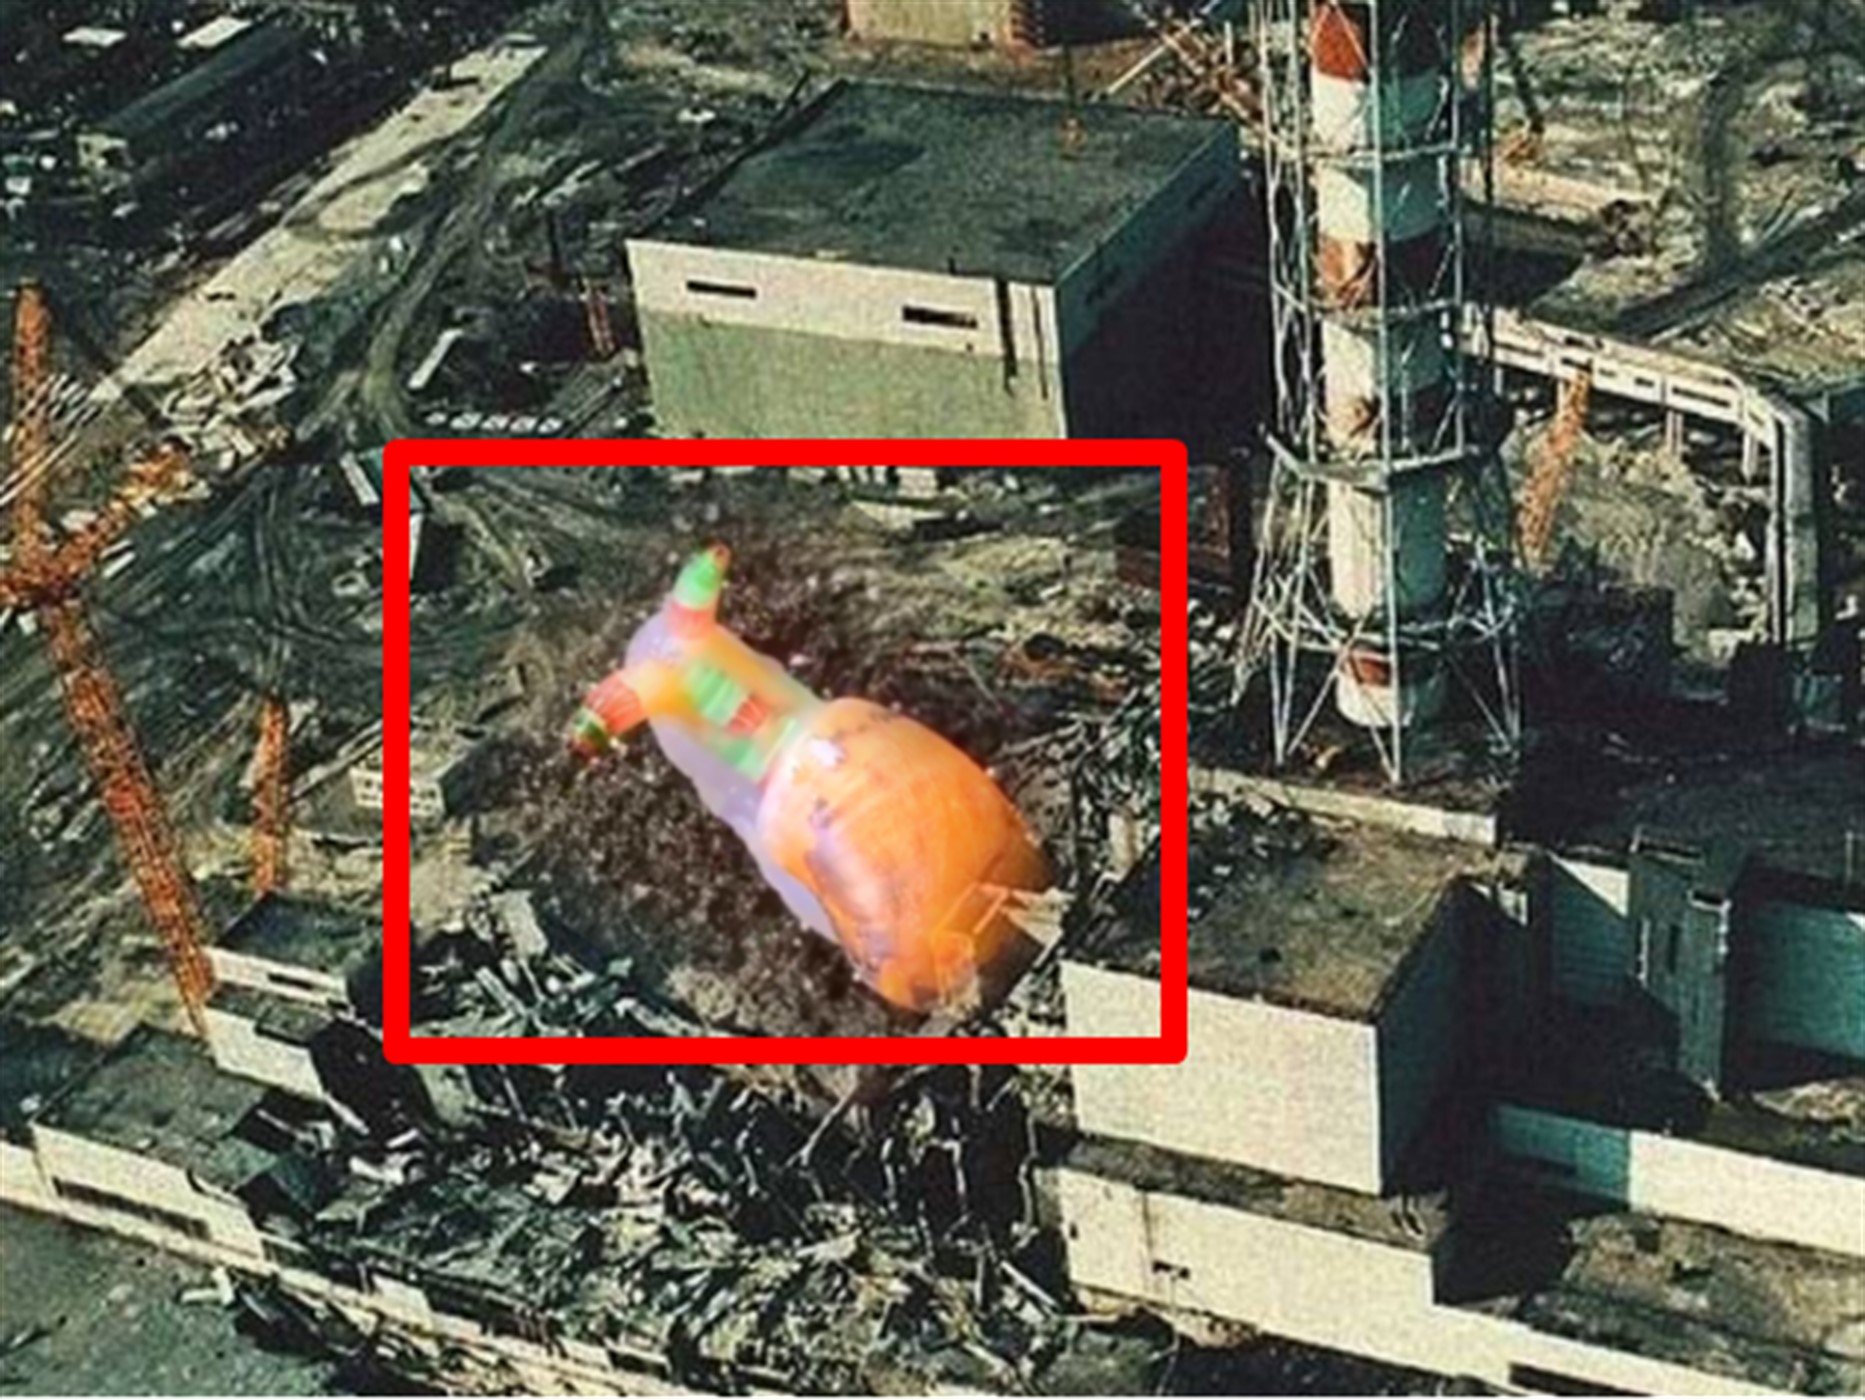 Момент взрыва аэс. Чернобыль 1986. Авария на Чернобыльской АЭС 1986. Чернобыль АЭС взрыв. Чернобыль авария 1986.